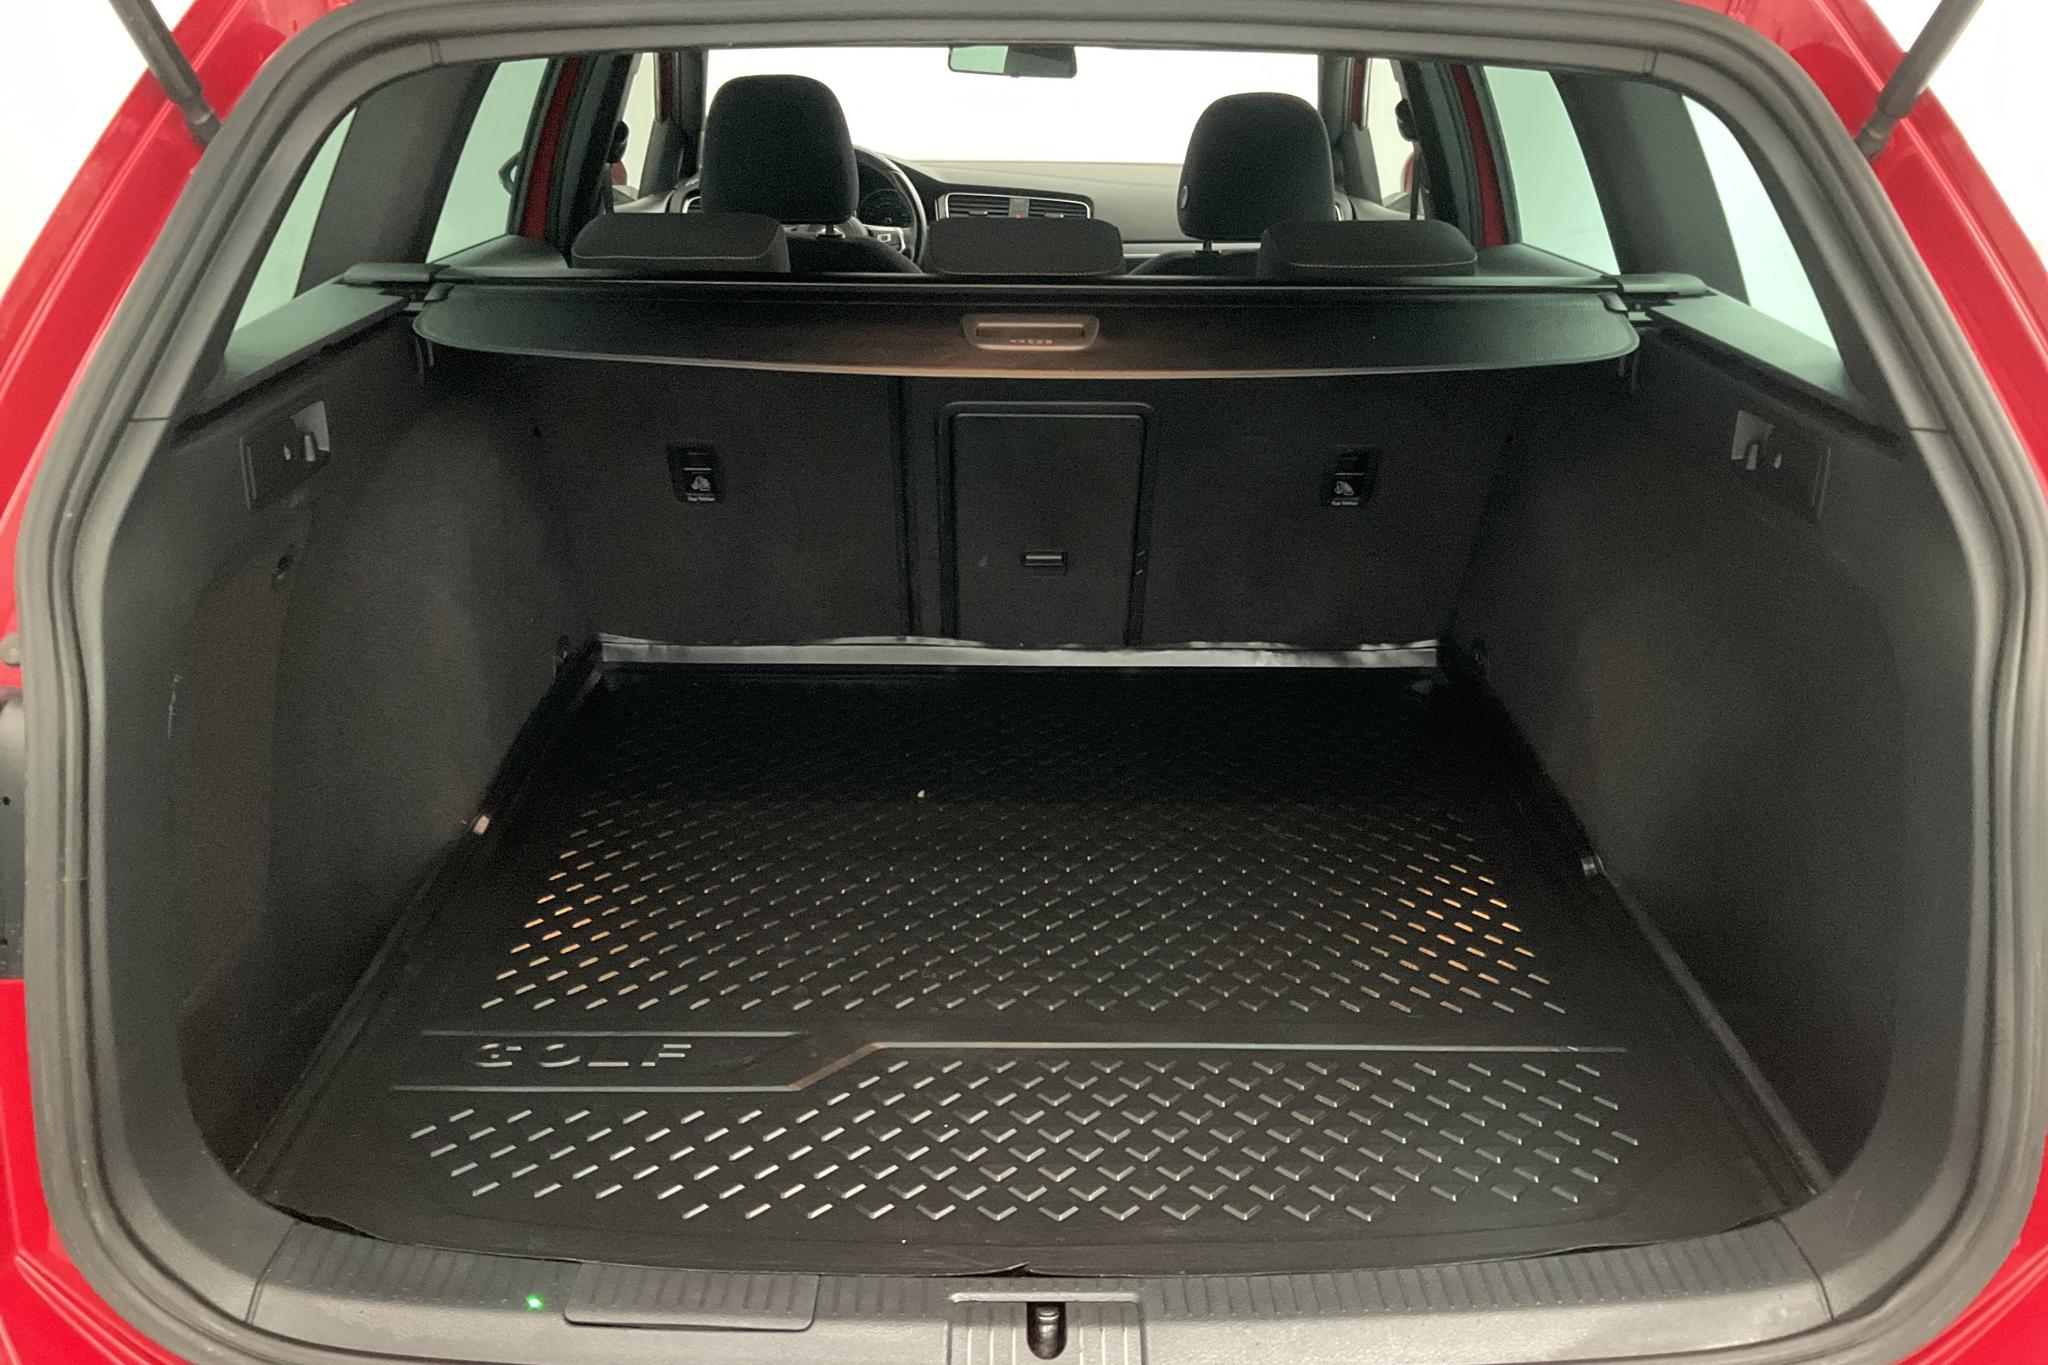 VW Golf VII 2.0 TDI BlueMotion Technology Sportscombi 4Motion (150hk) - 10 592 mil - Manuell - röd - 2017